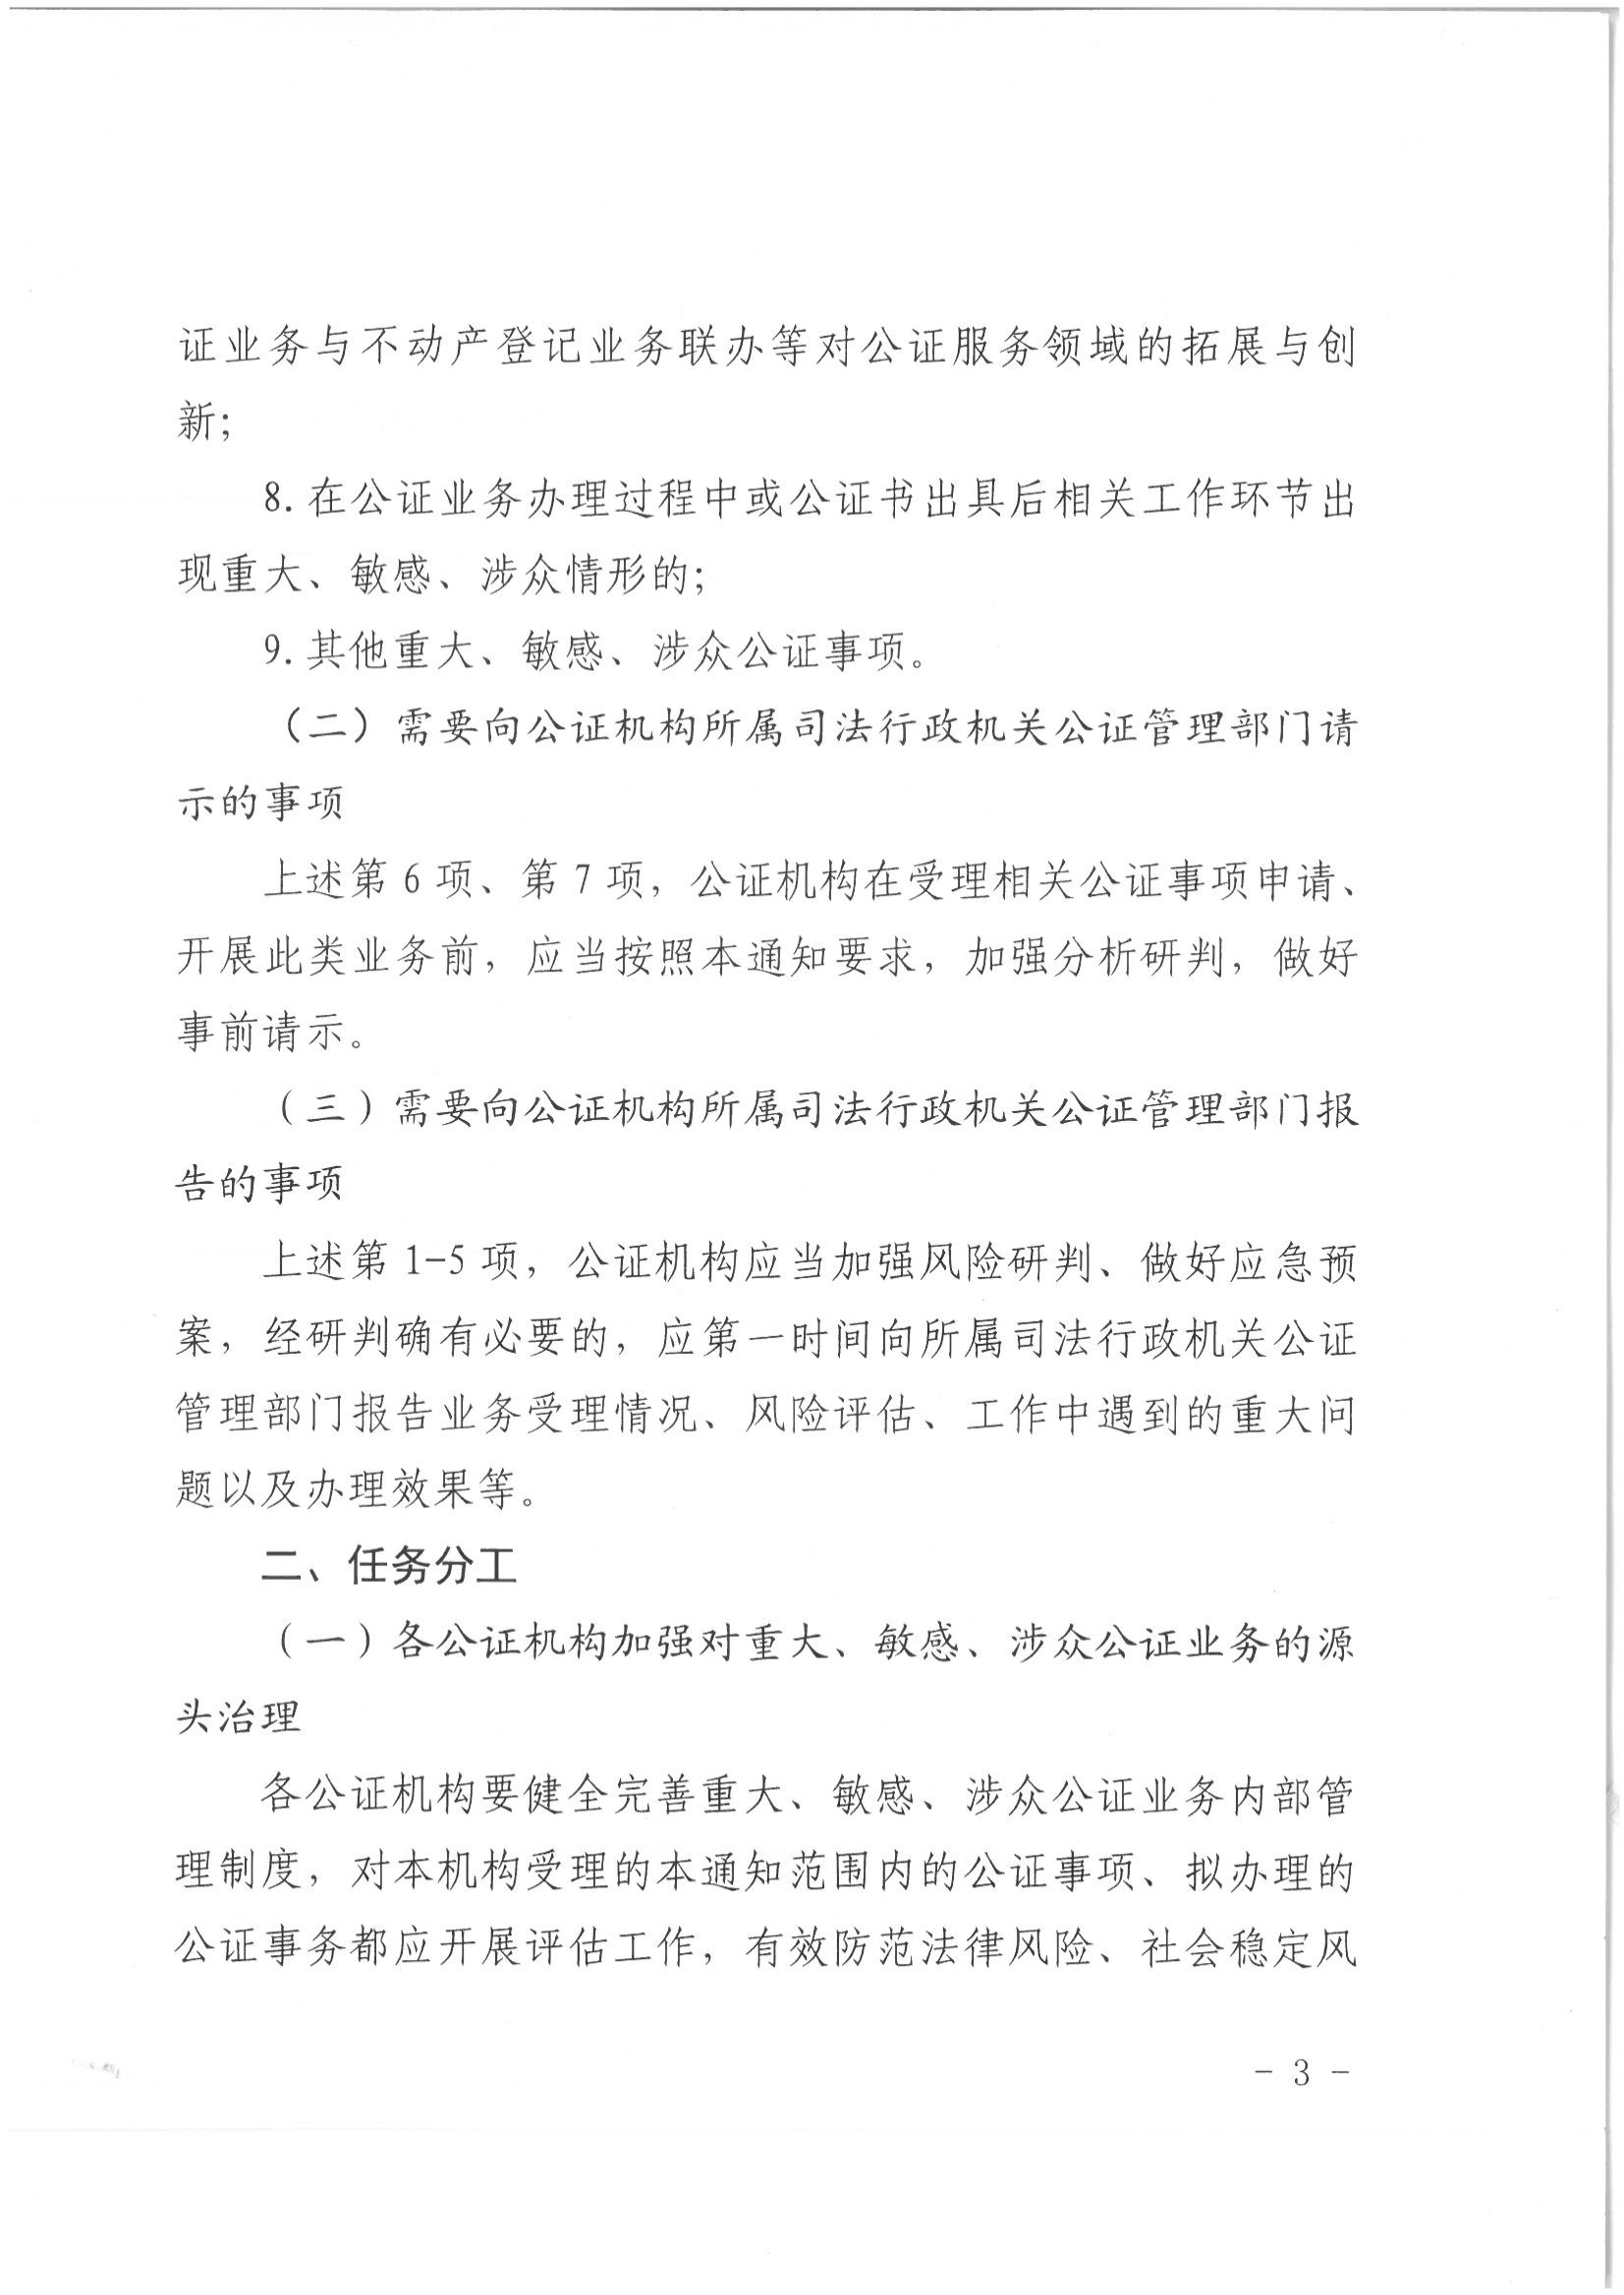 1北京市司法局办公室关于加强重大、敏感、涉众公证业务管理工作的通知_02